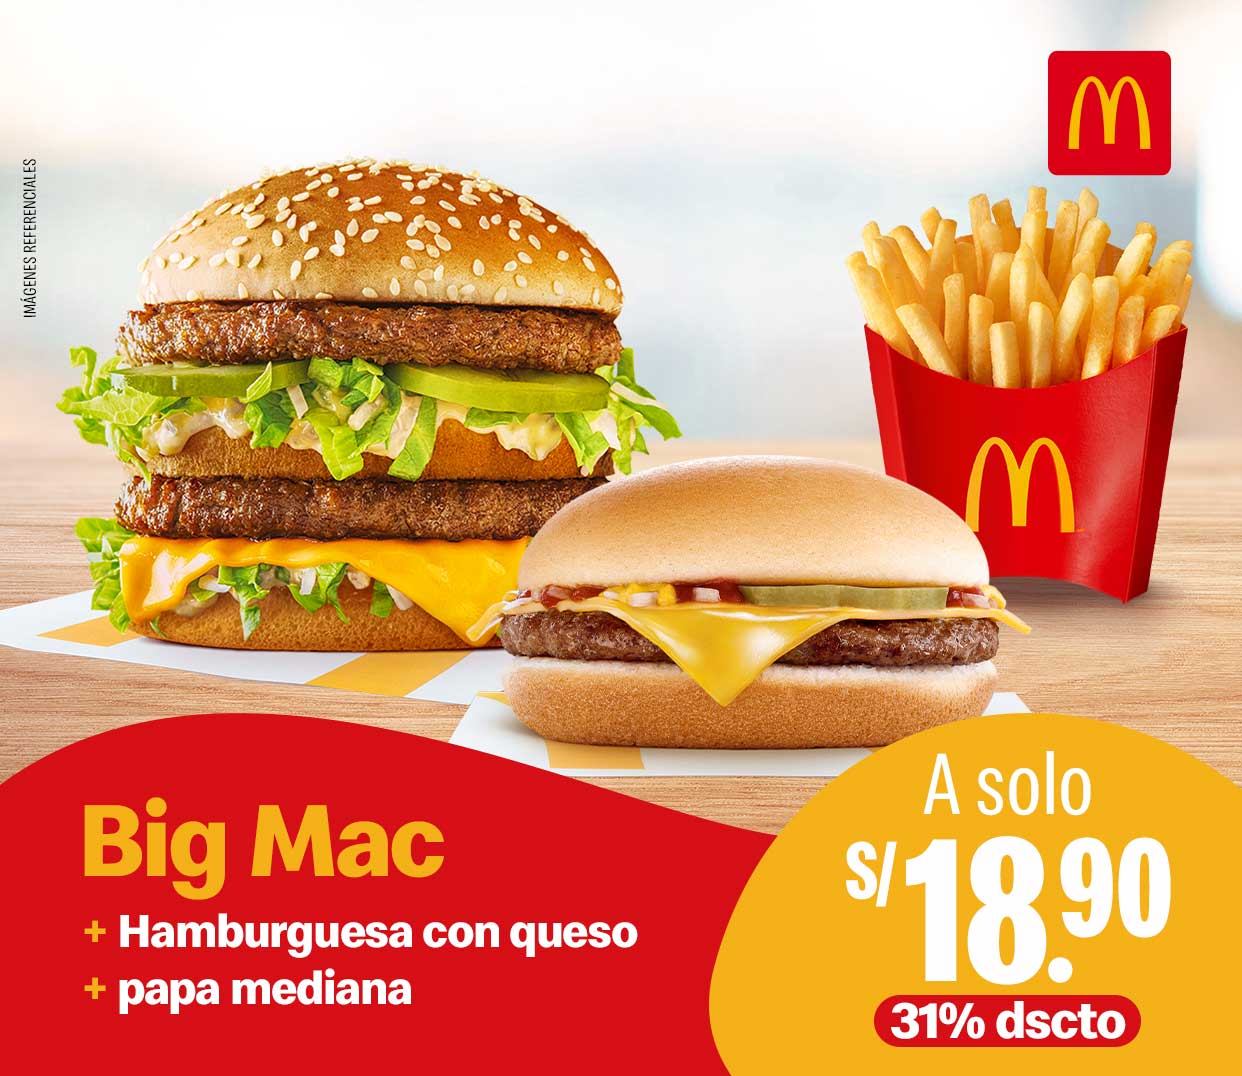 Imagen de Big Mac con Hamburguesa y papas